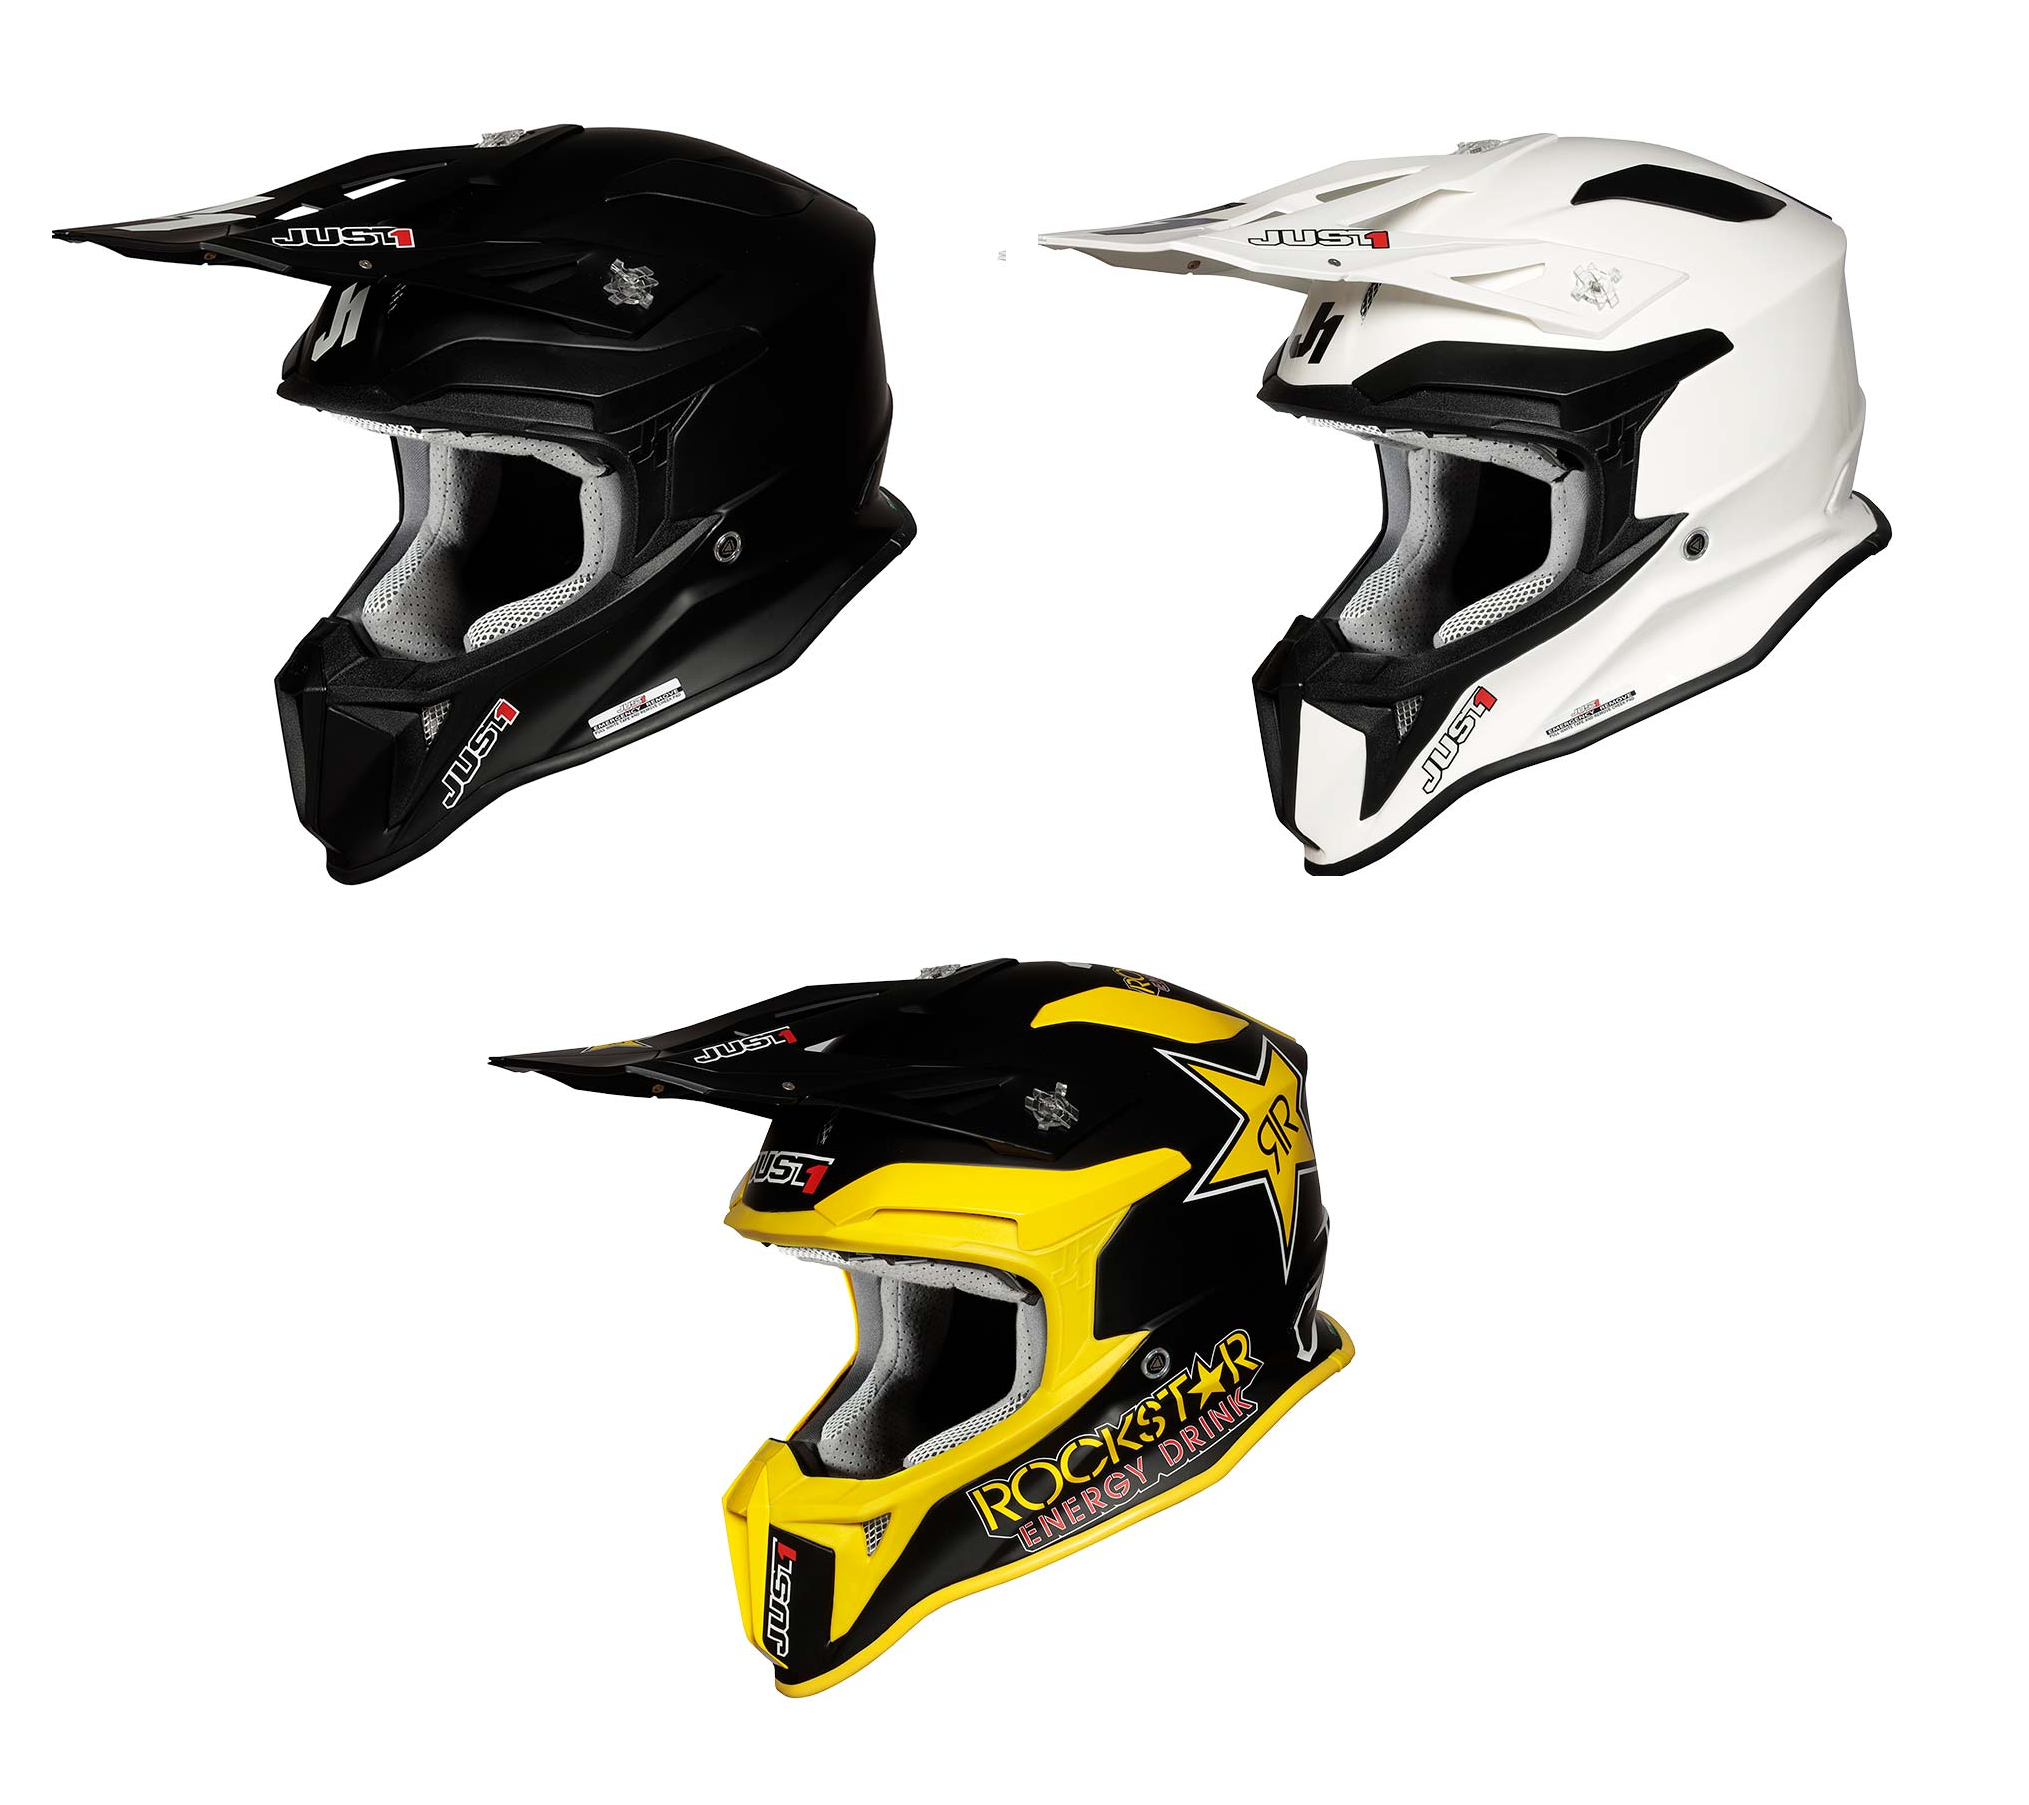 Just1 J18 Fiberglass Helmet (Three Colors) (XS-XXL) [Discontinued]